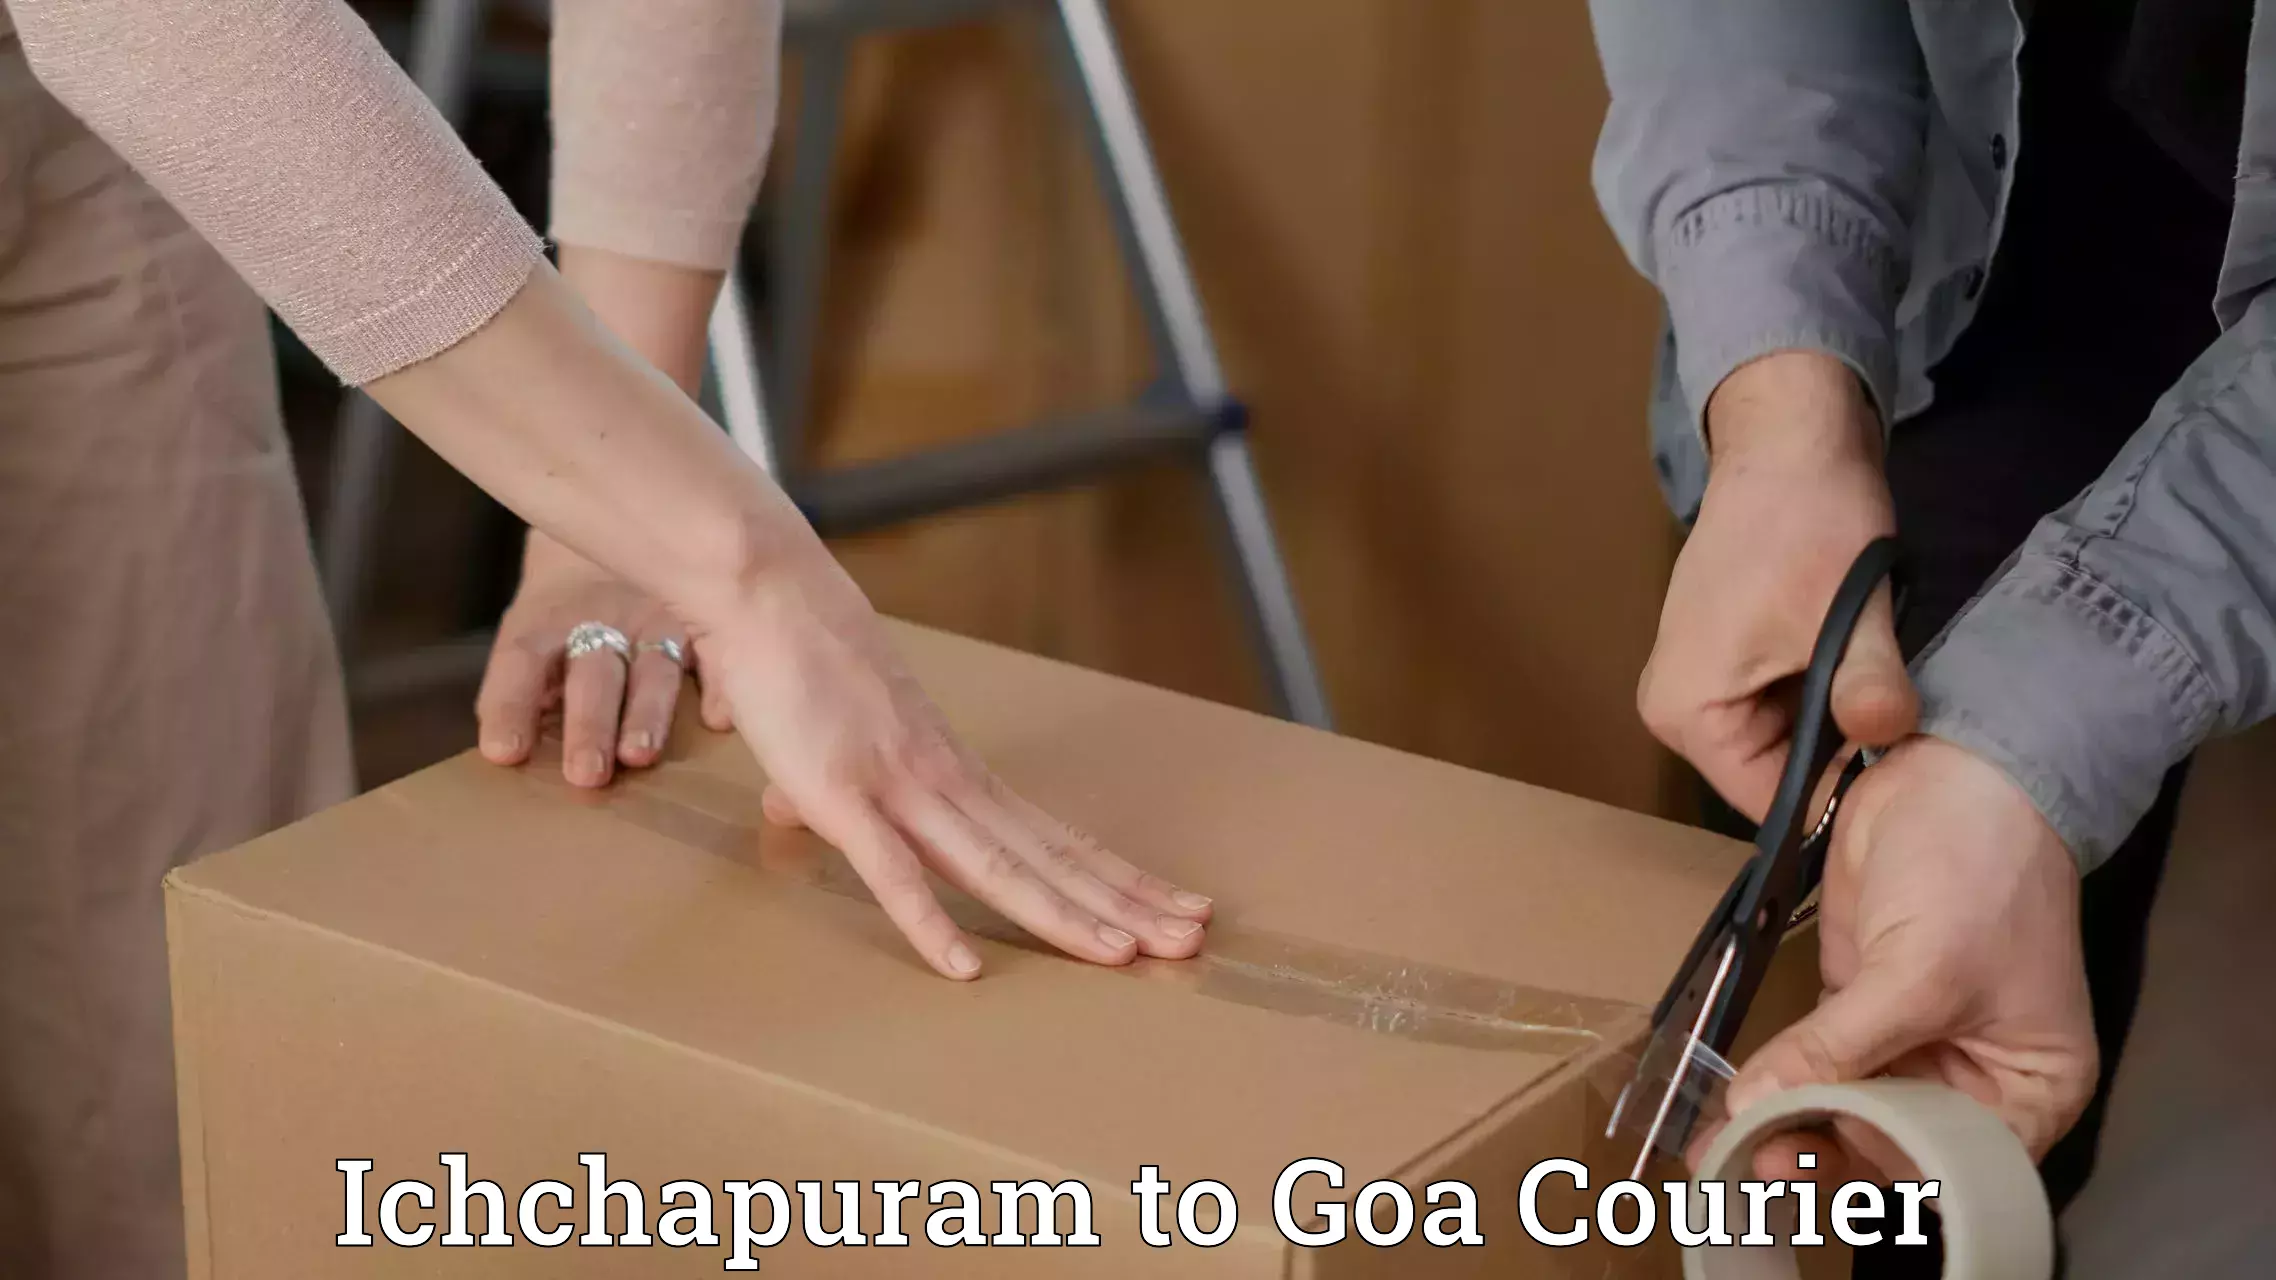 Easy access courier services Ichchapuram to Ponda